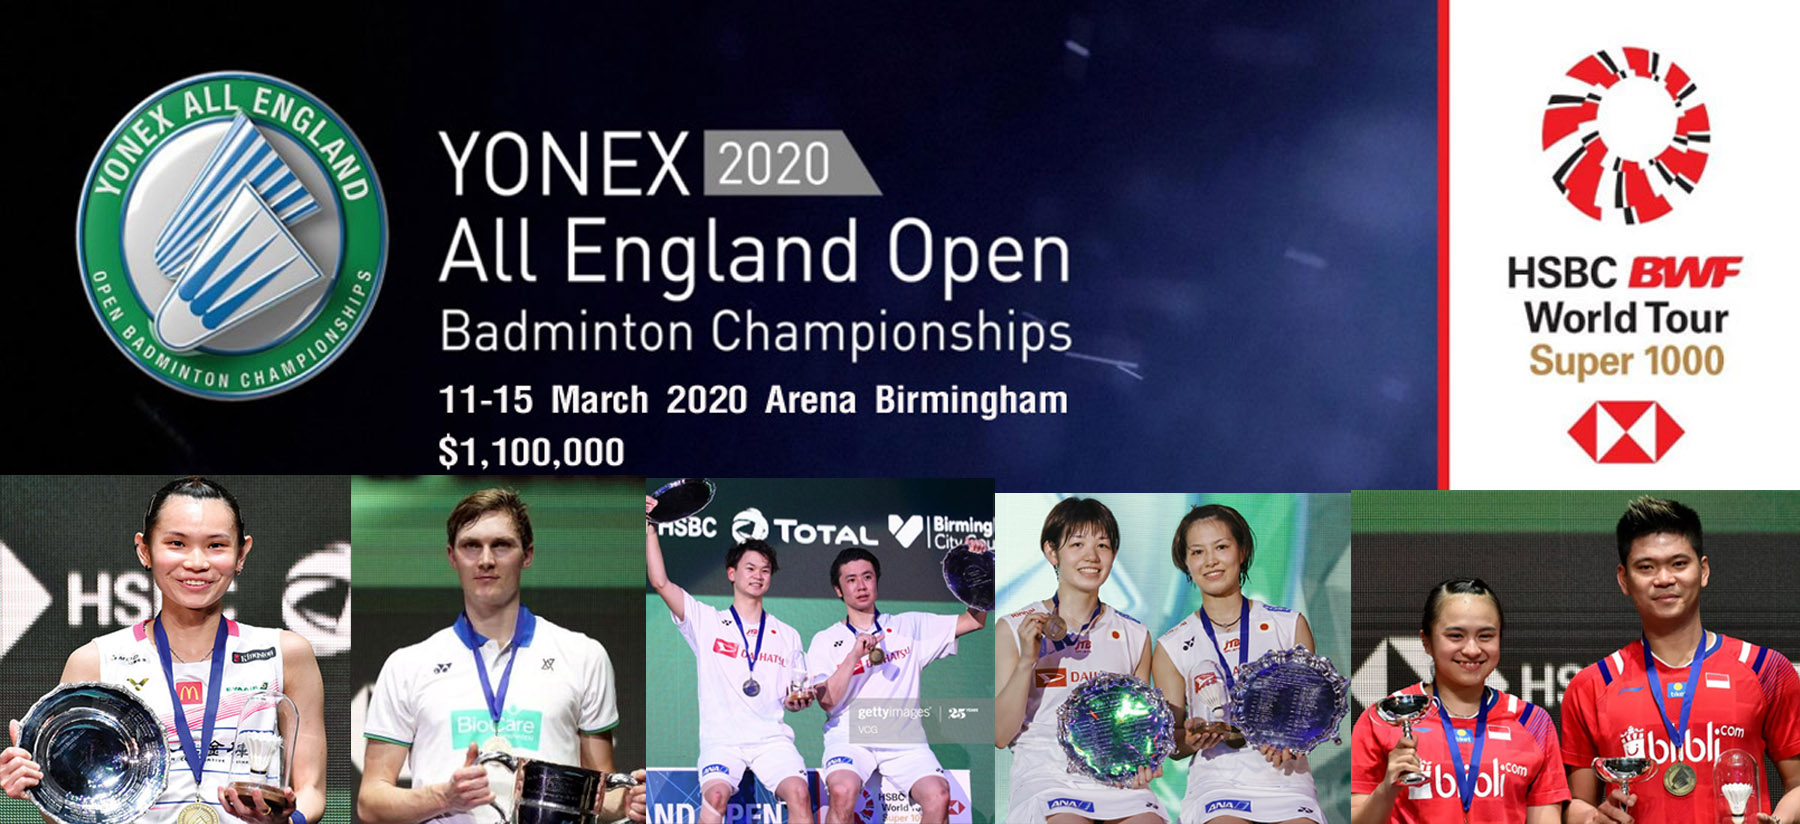 คลิปแบดมินตัน YONEX All England Open 2020 รอบก่อนรอง - รอบชิงชนะเลิศ 13 - 15 มี.ค